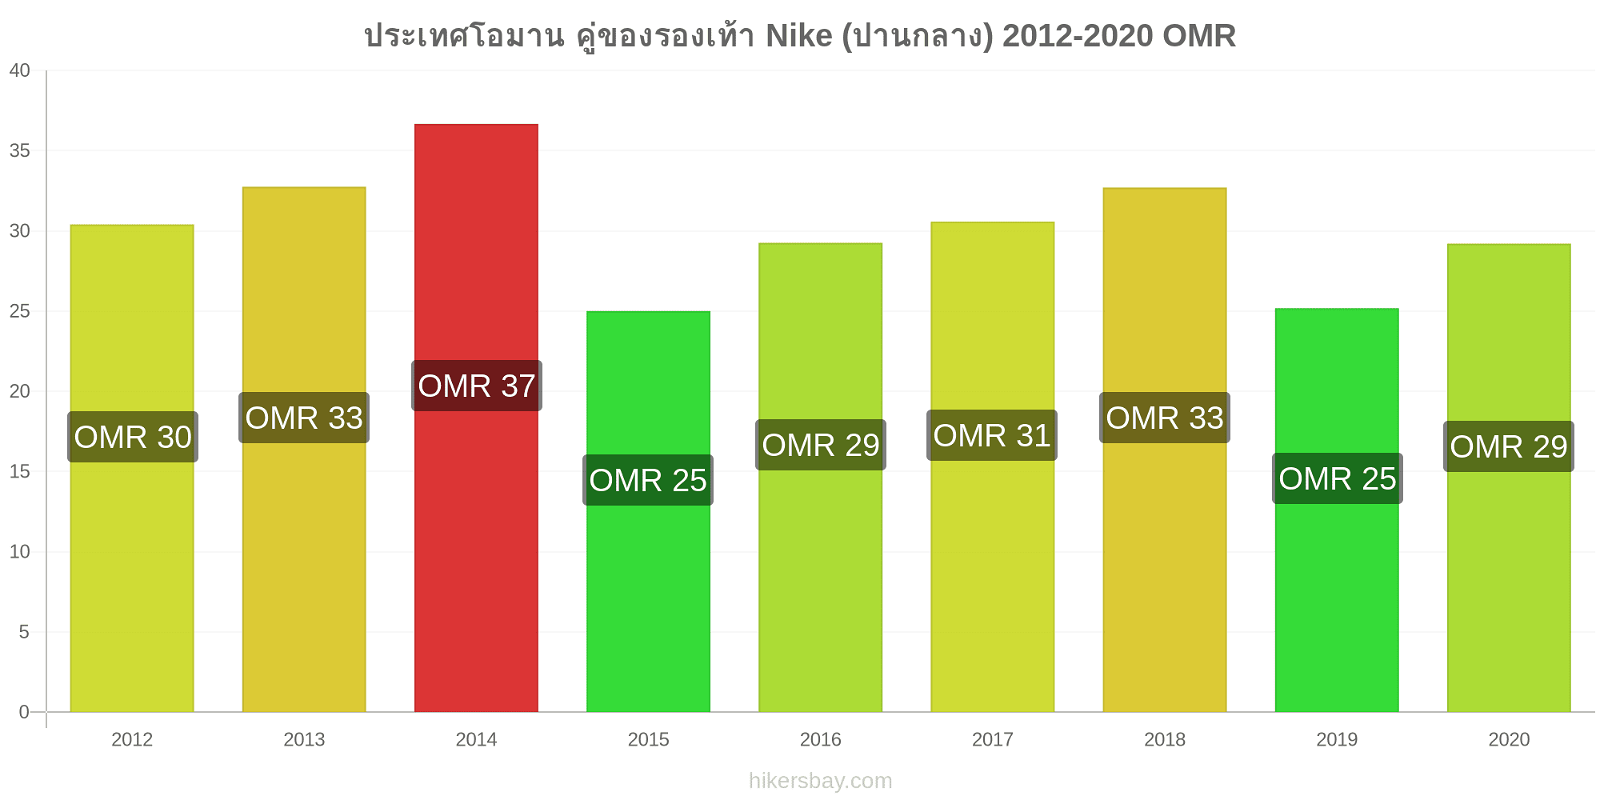 ประเทศโอมาน การเปลี่ยนแปลงราคา คู่ของรองเท้า Nike (ปานกลาง) hikersbay.com